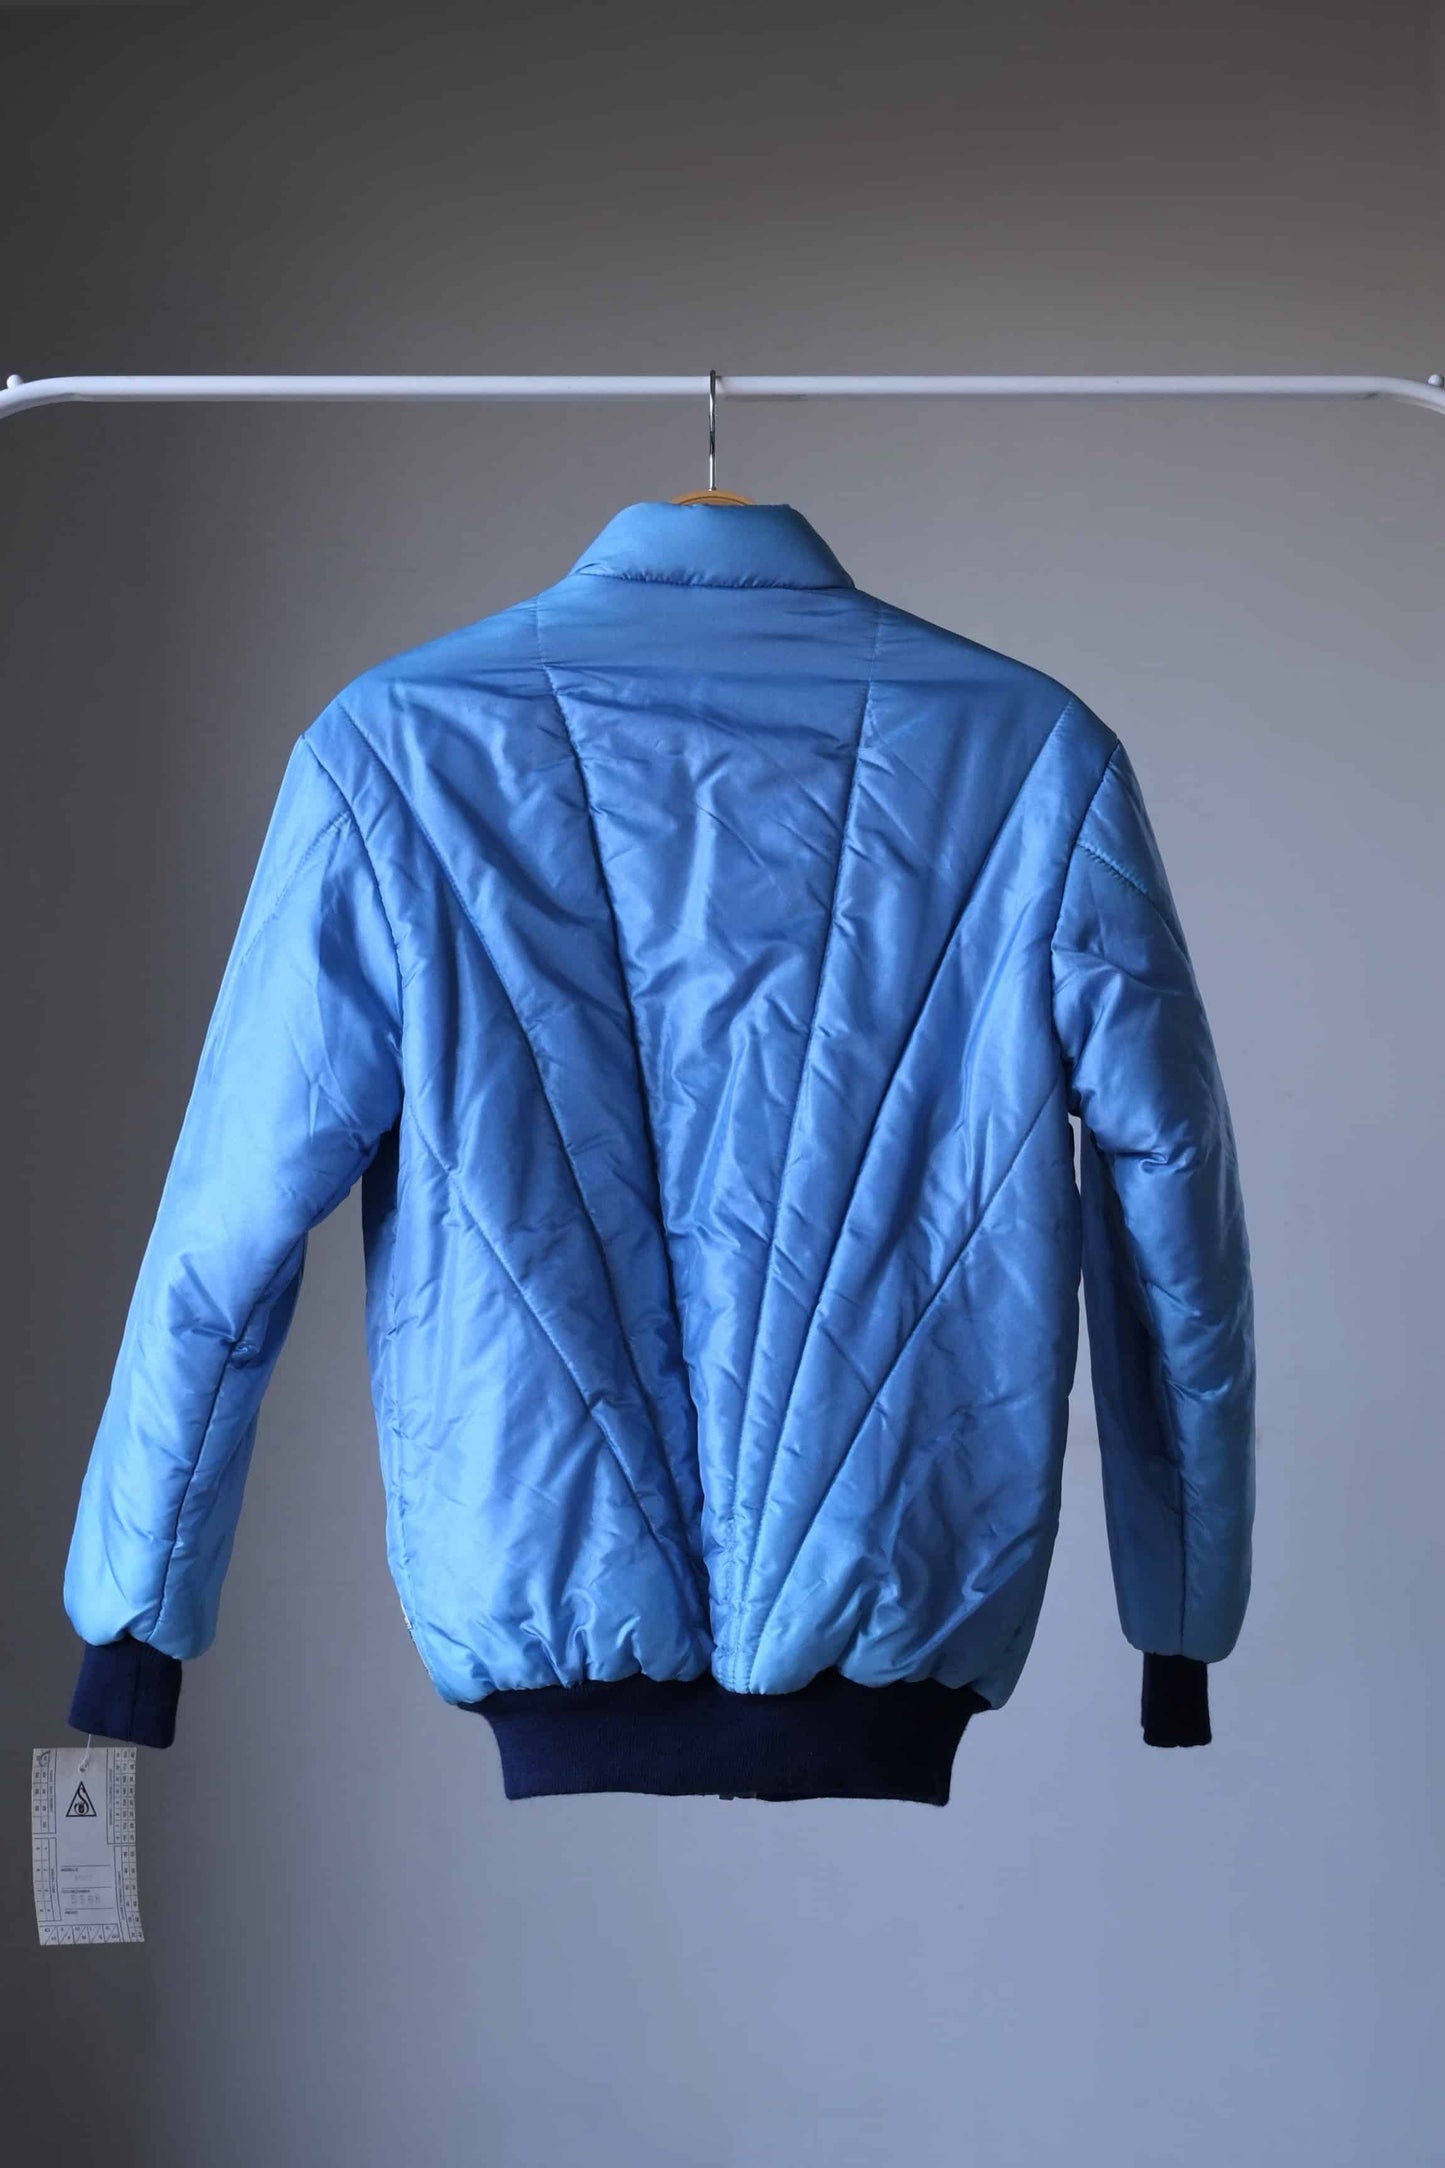 SANRIVAL Vintage 70's Ski Jacket, on hanger from the backside. Color: mettalic blue.